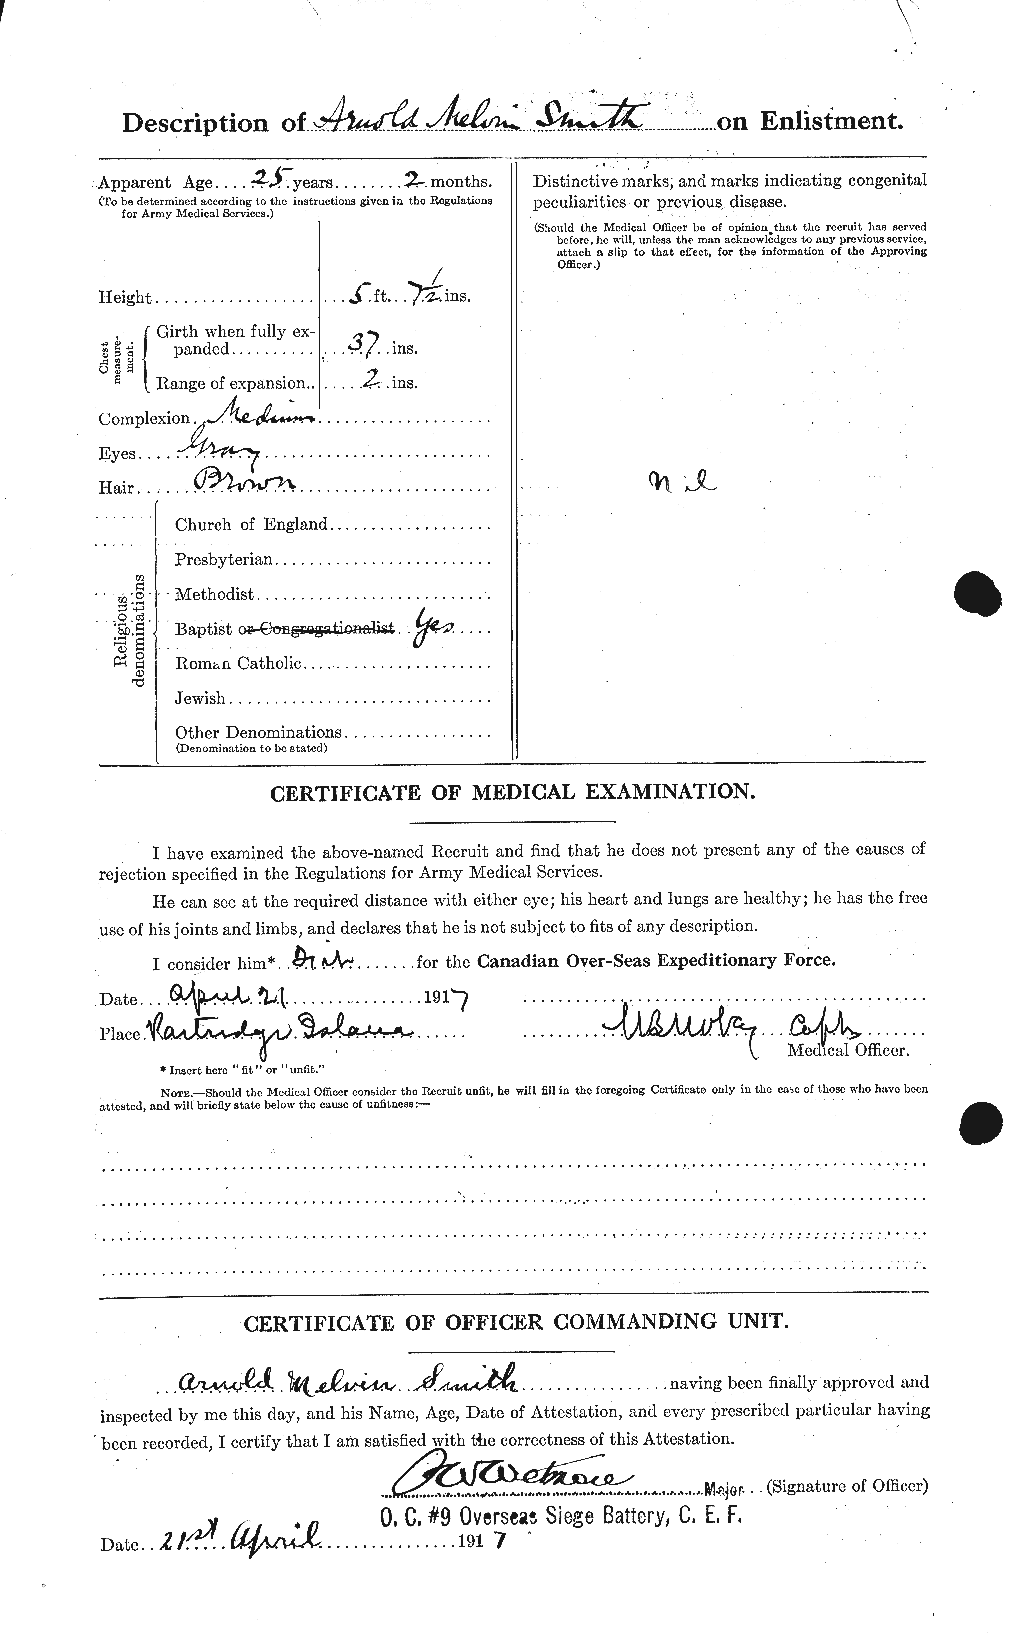 Dossiers du Personnel de la Première Guerre mondiale - CEC 102193b